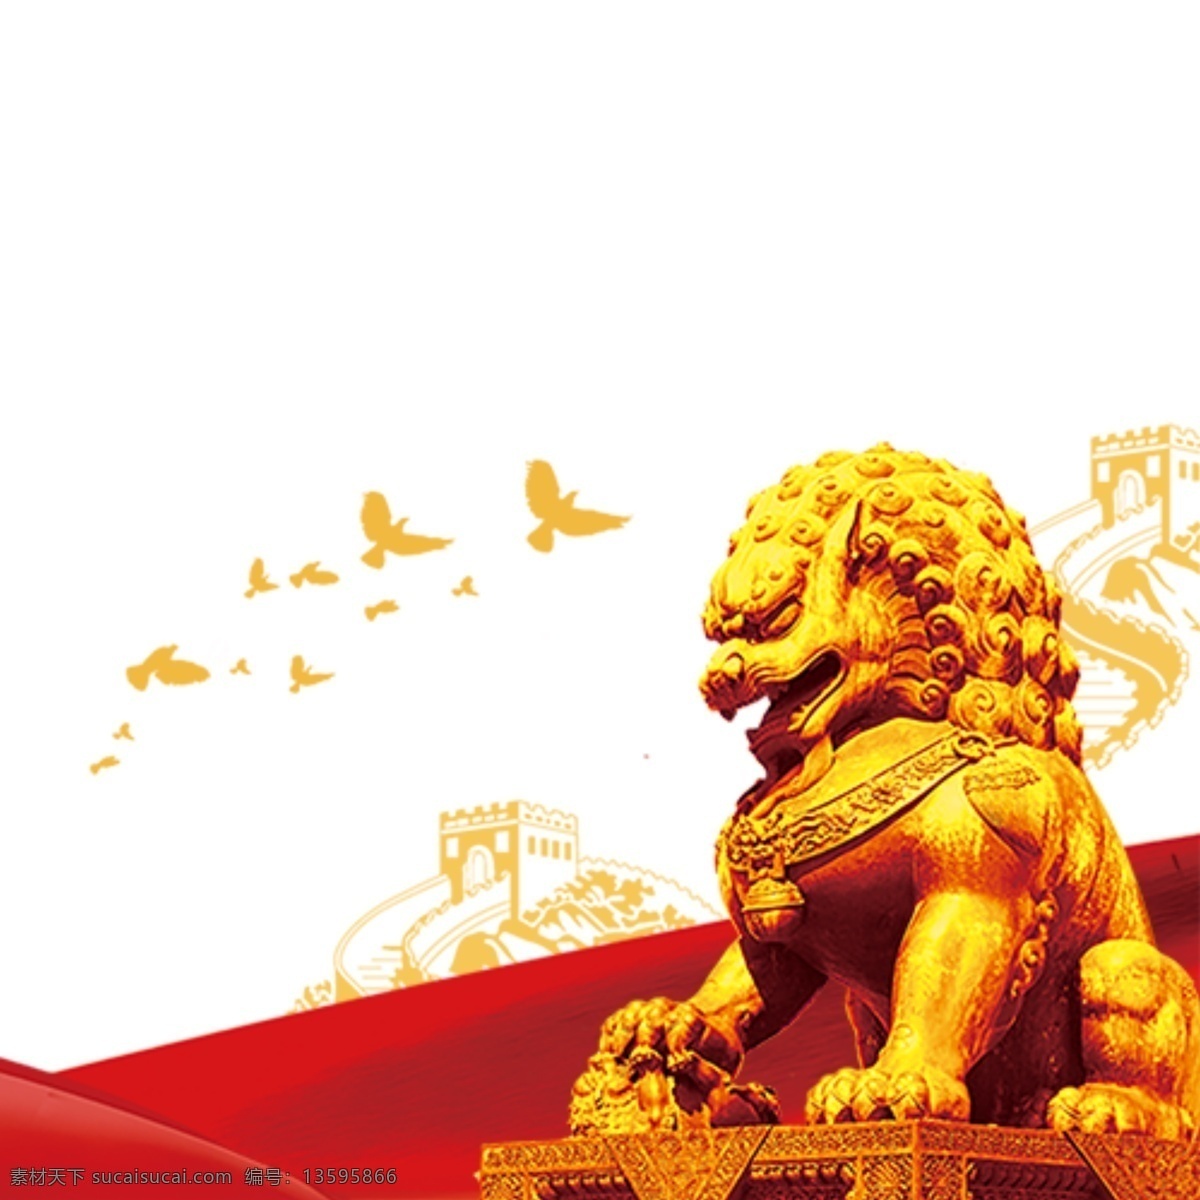 金狮子图片 狮子 金狮子 金狮 红绸 绸缎 飞鸟 长城 中国风 素材图